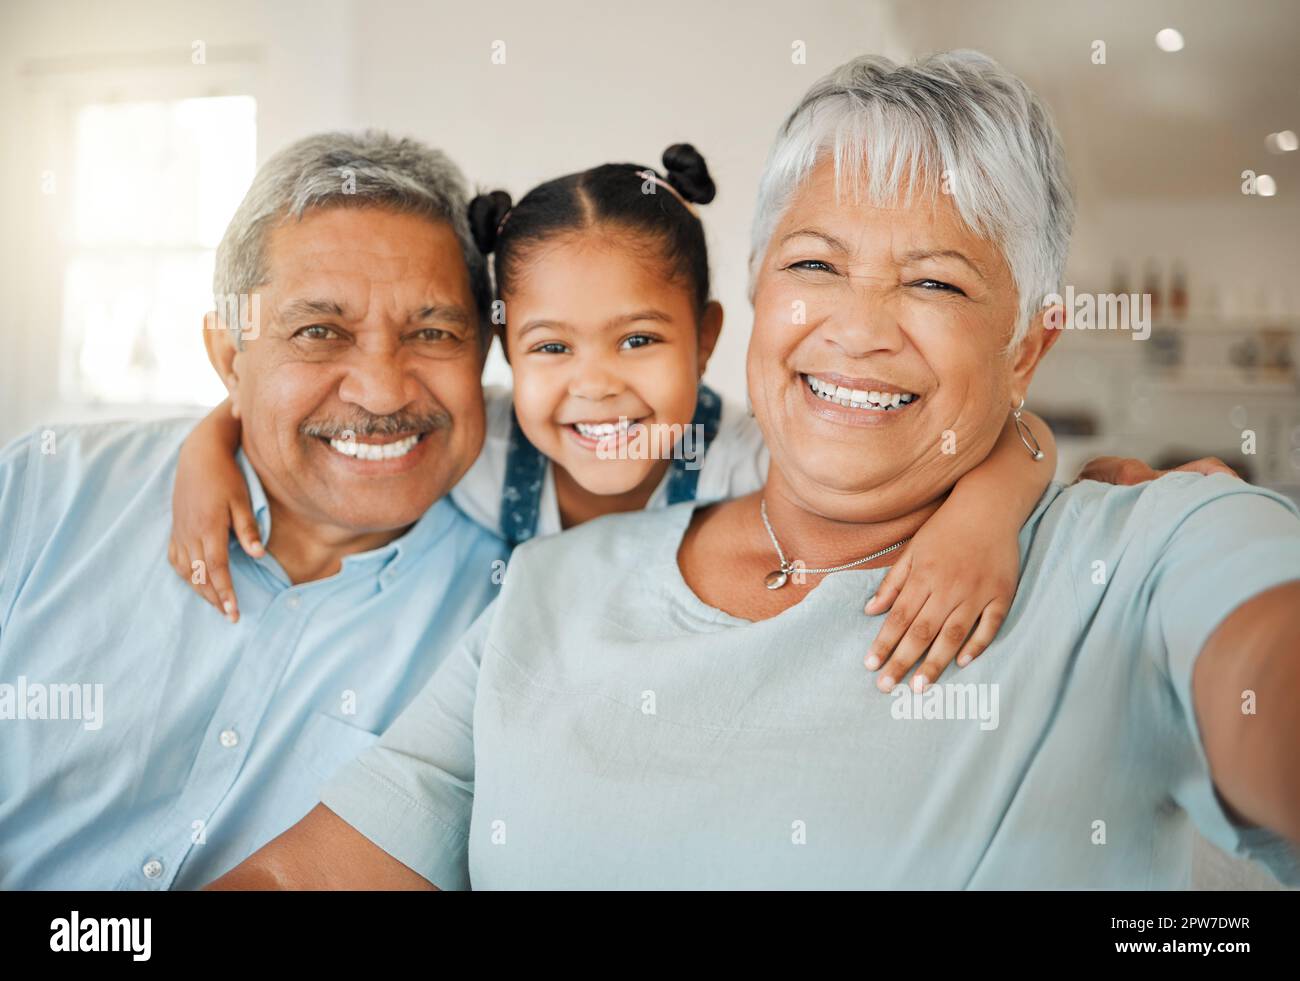 Pour nous, la famille signifie mettre vos bras les uns autour des autres. les grands-parents se sont solidaires de leur petite-fille sur un canapé à la maison Banque D'Images